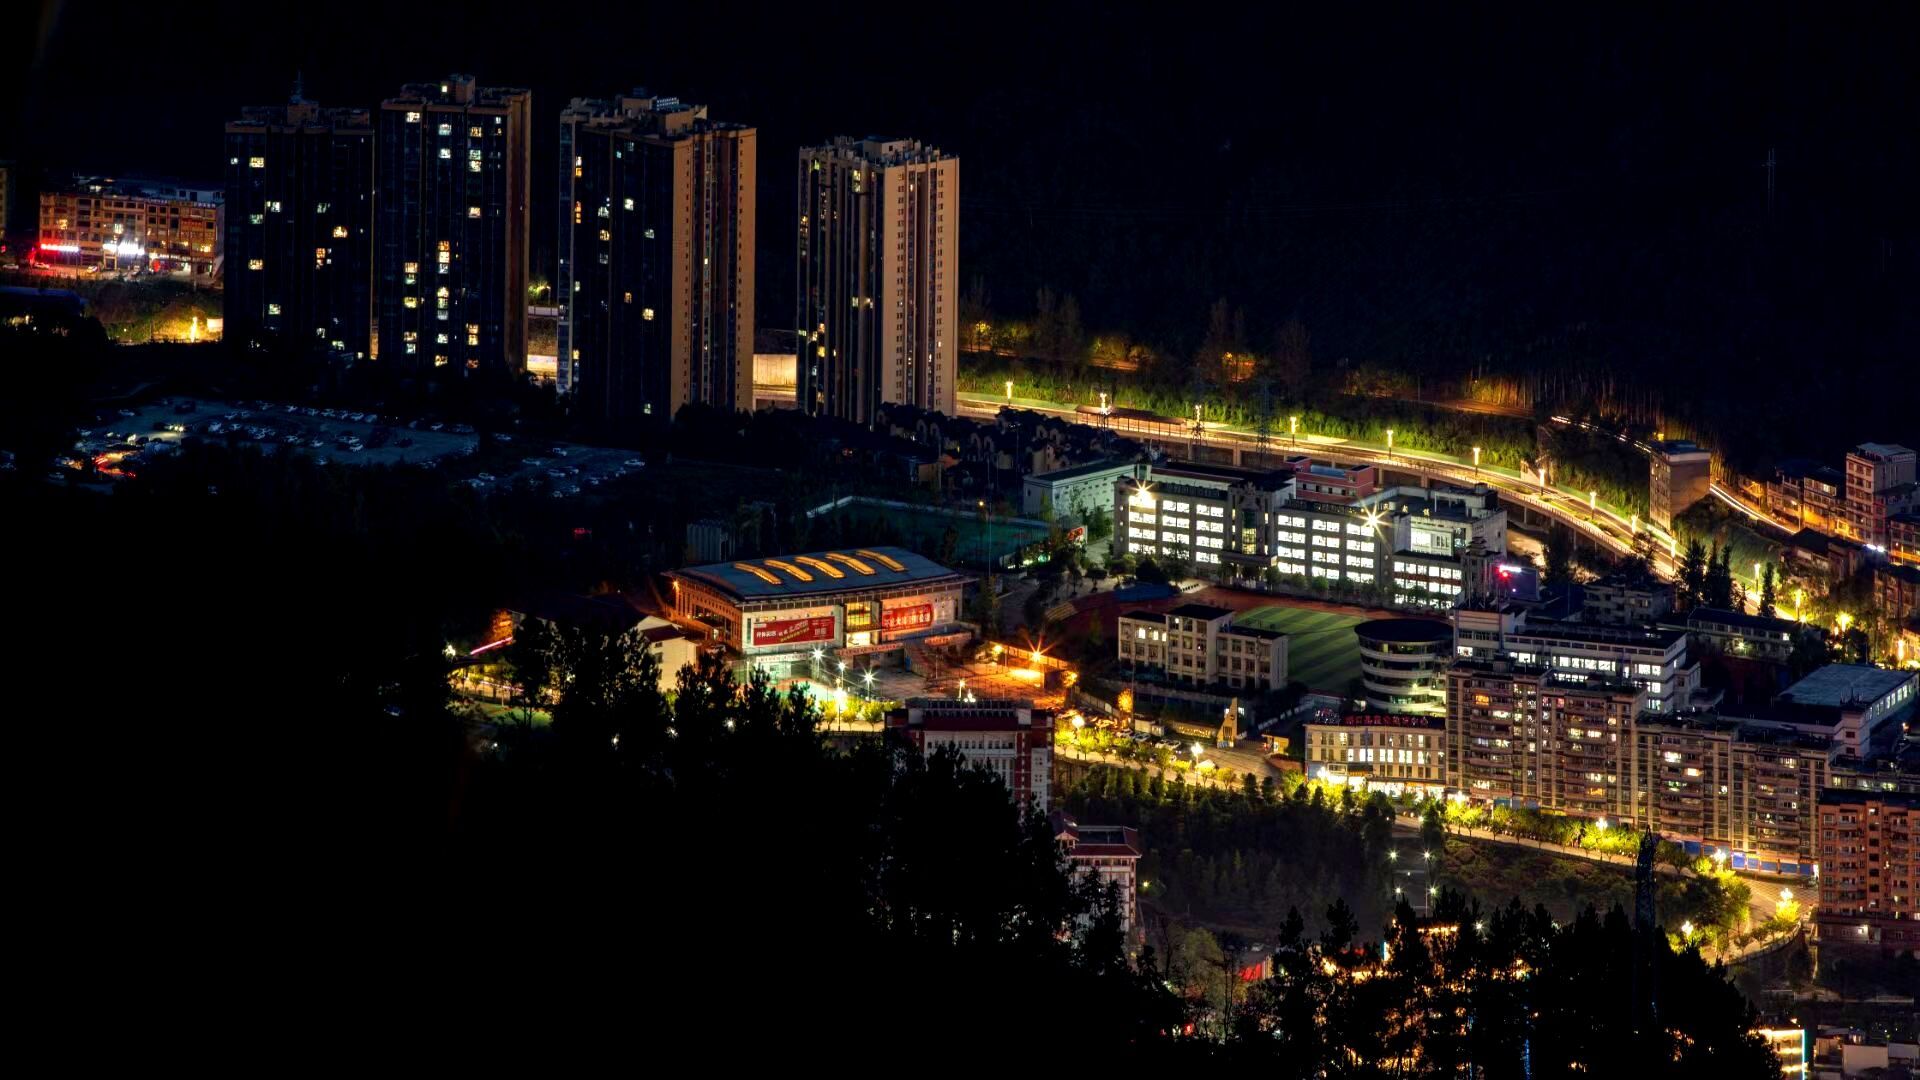 重庆城口:小城夜景